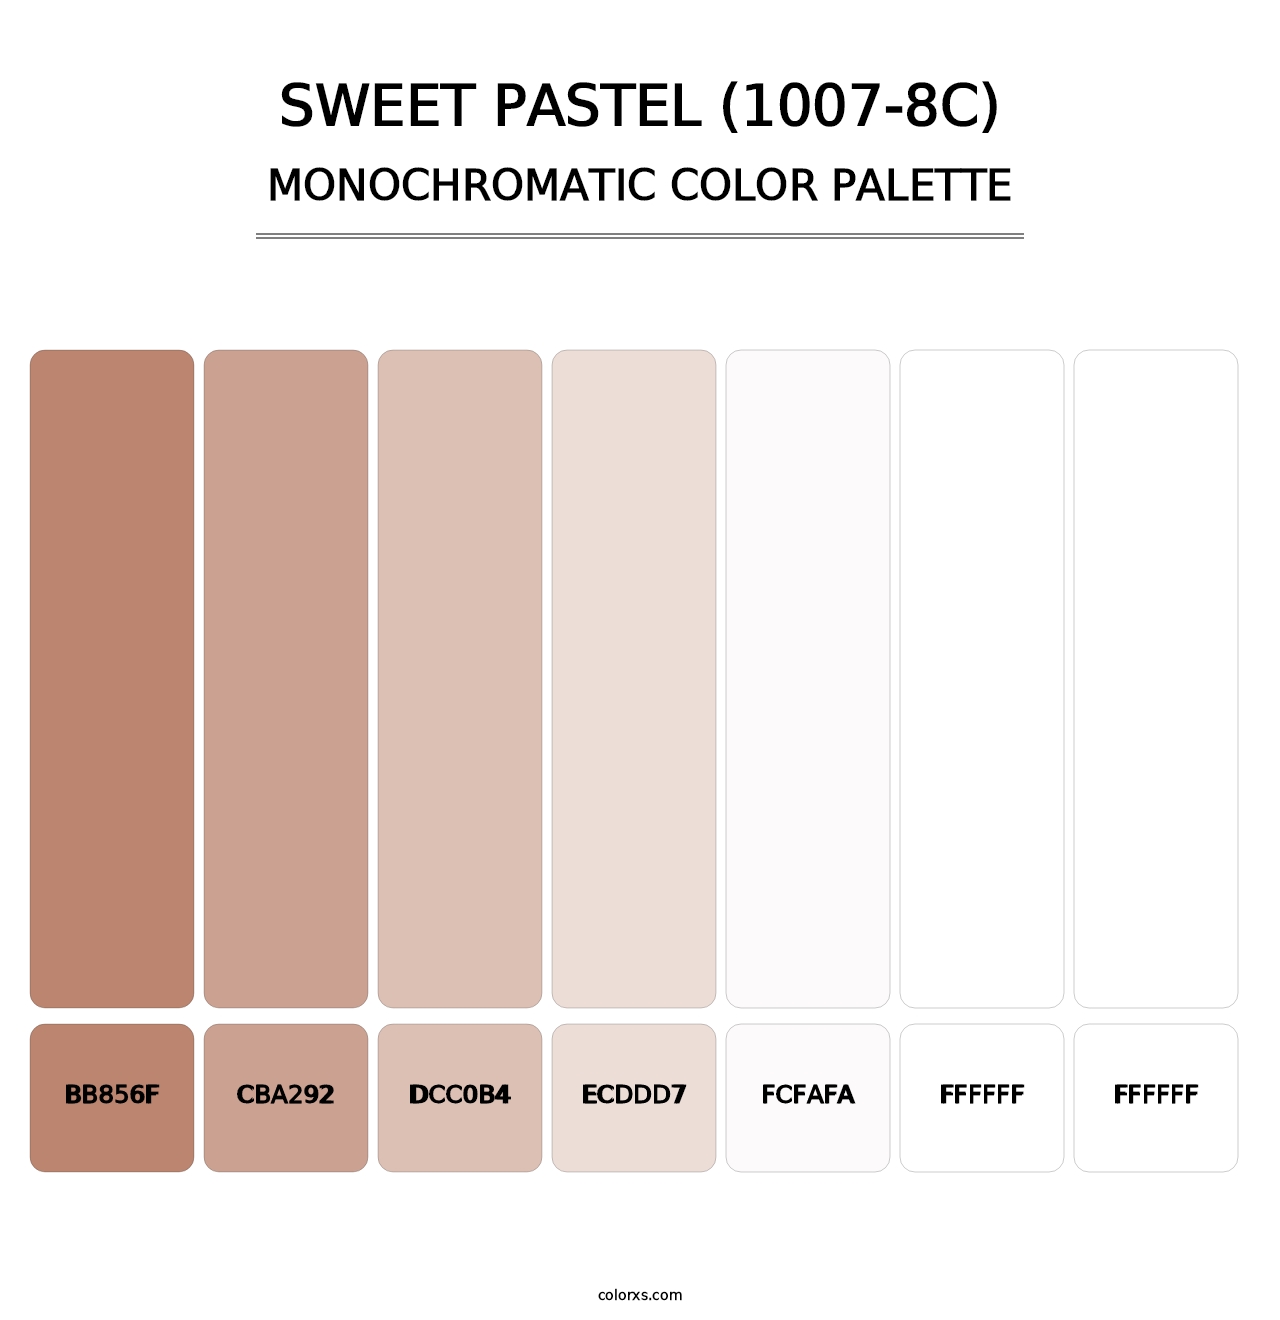 Sweet Pastel (1007-8C) - Monochromatic Color Palette